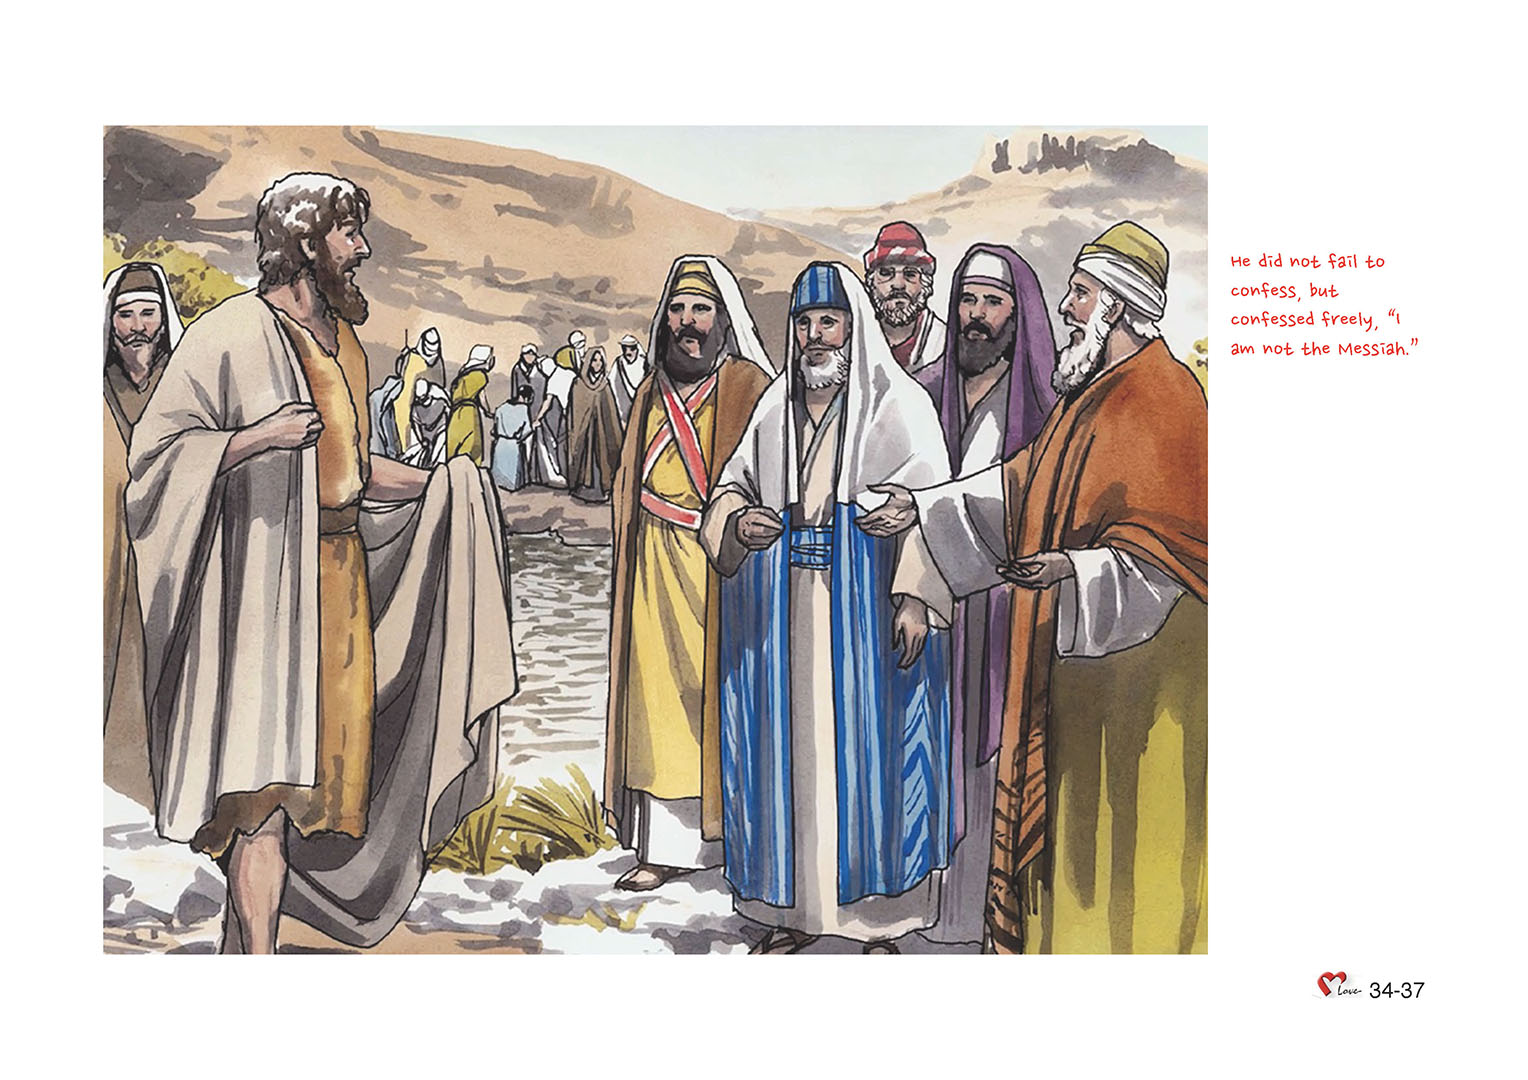 Chapter 34 - Lesson 101 - John the Baptist